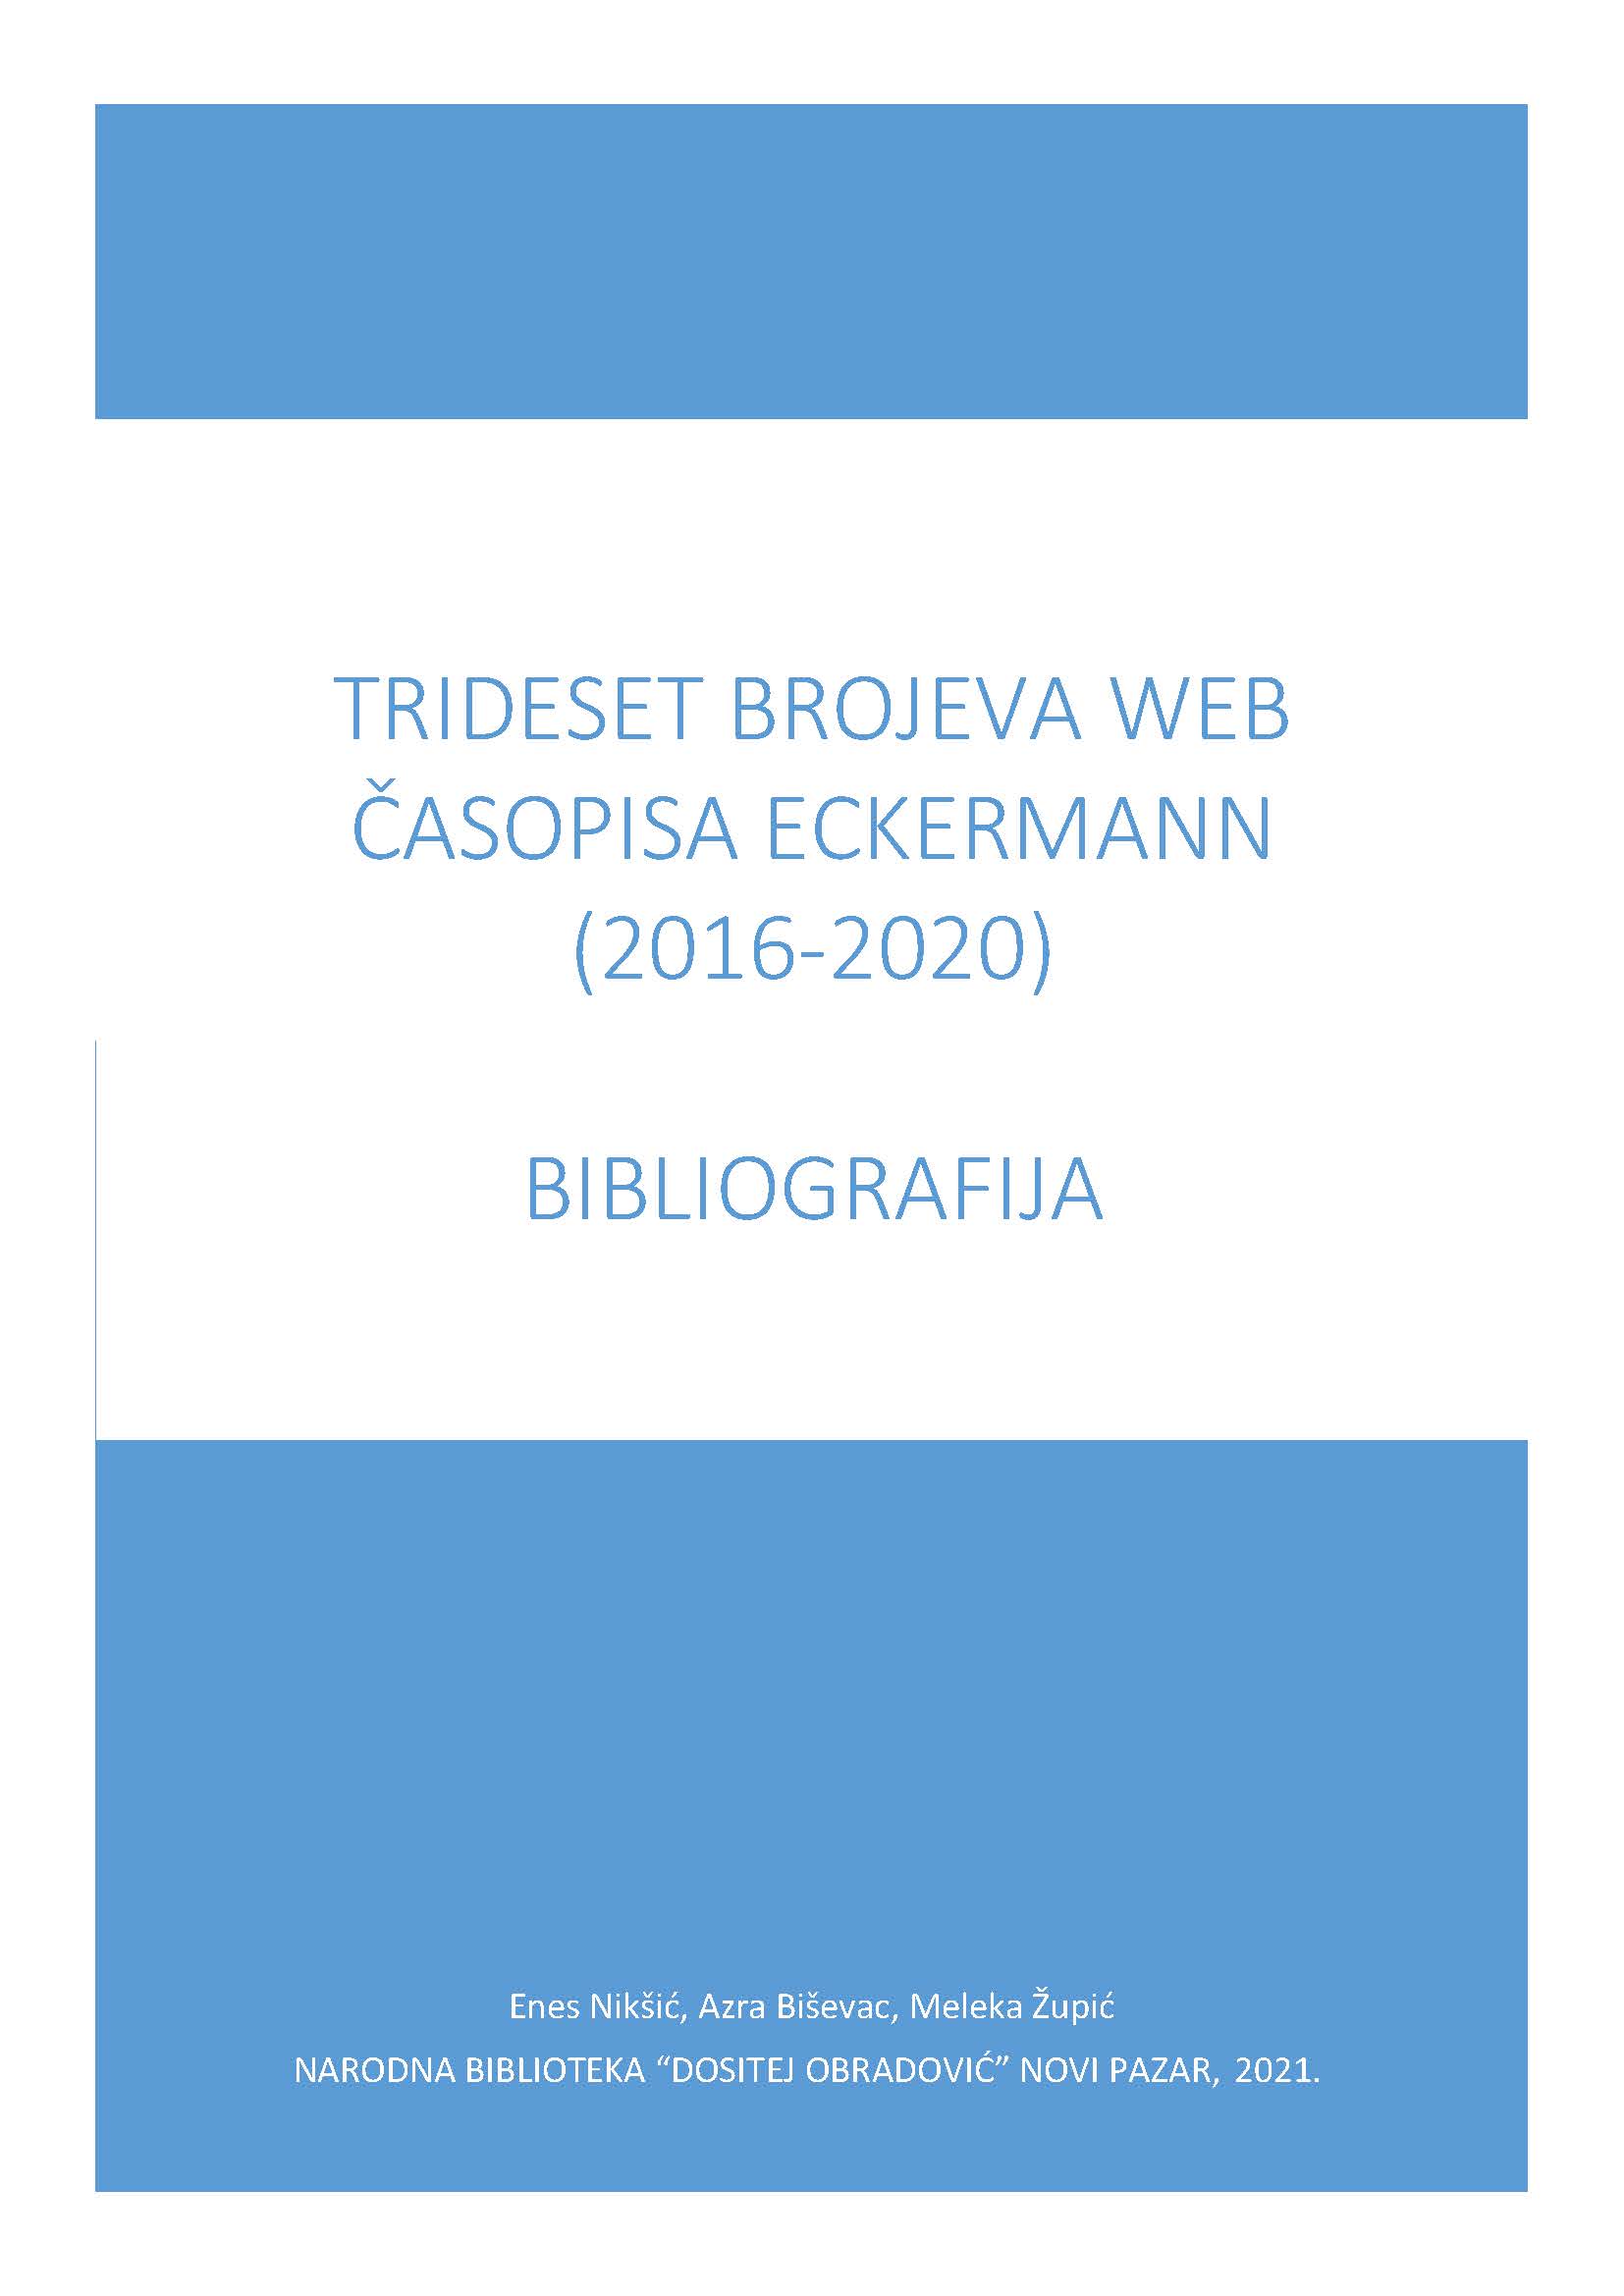 Bibliografija trideset brojeva web časopisa Eckermann (2016-2020)